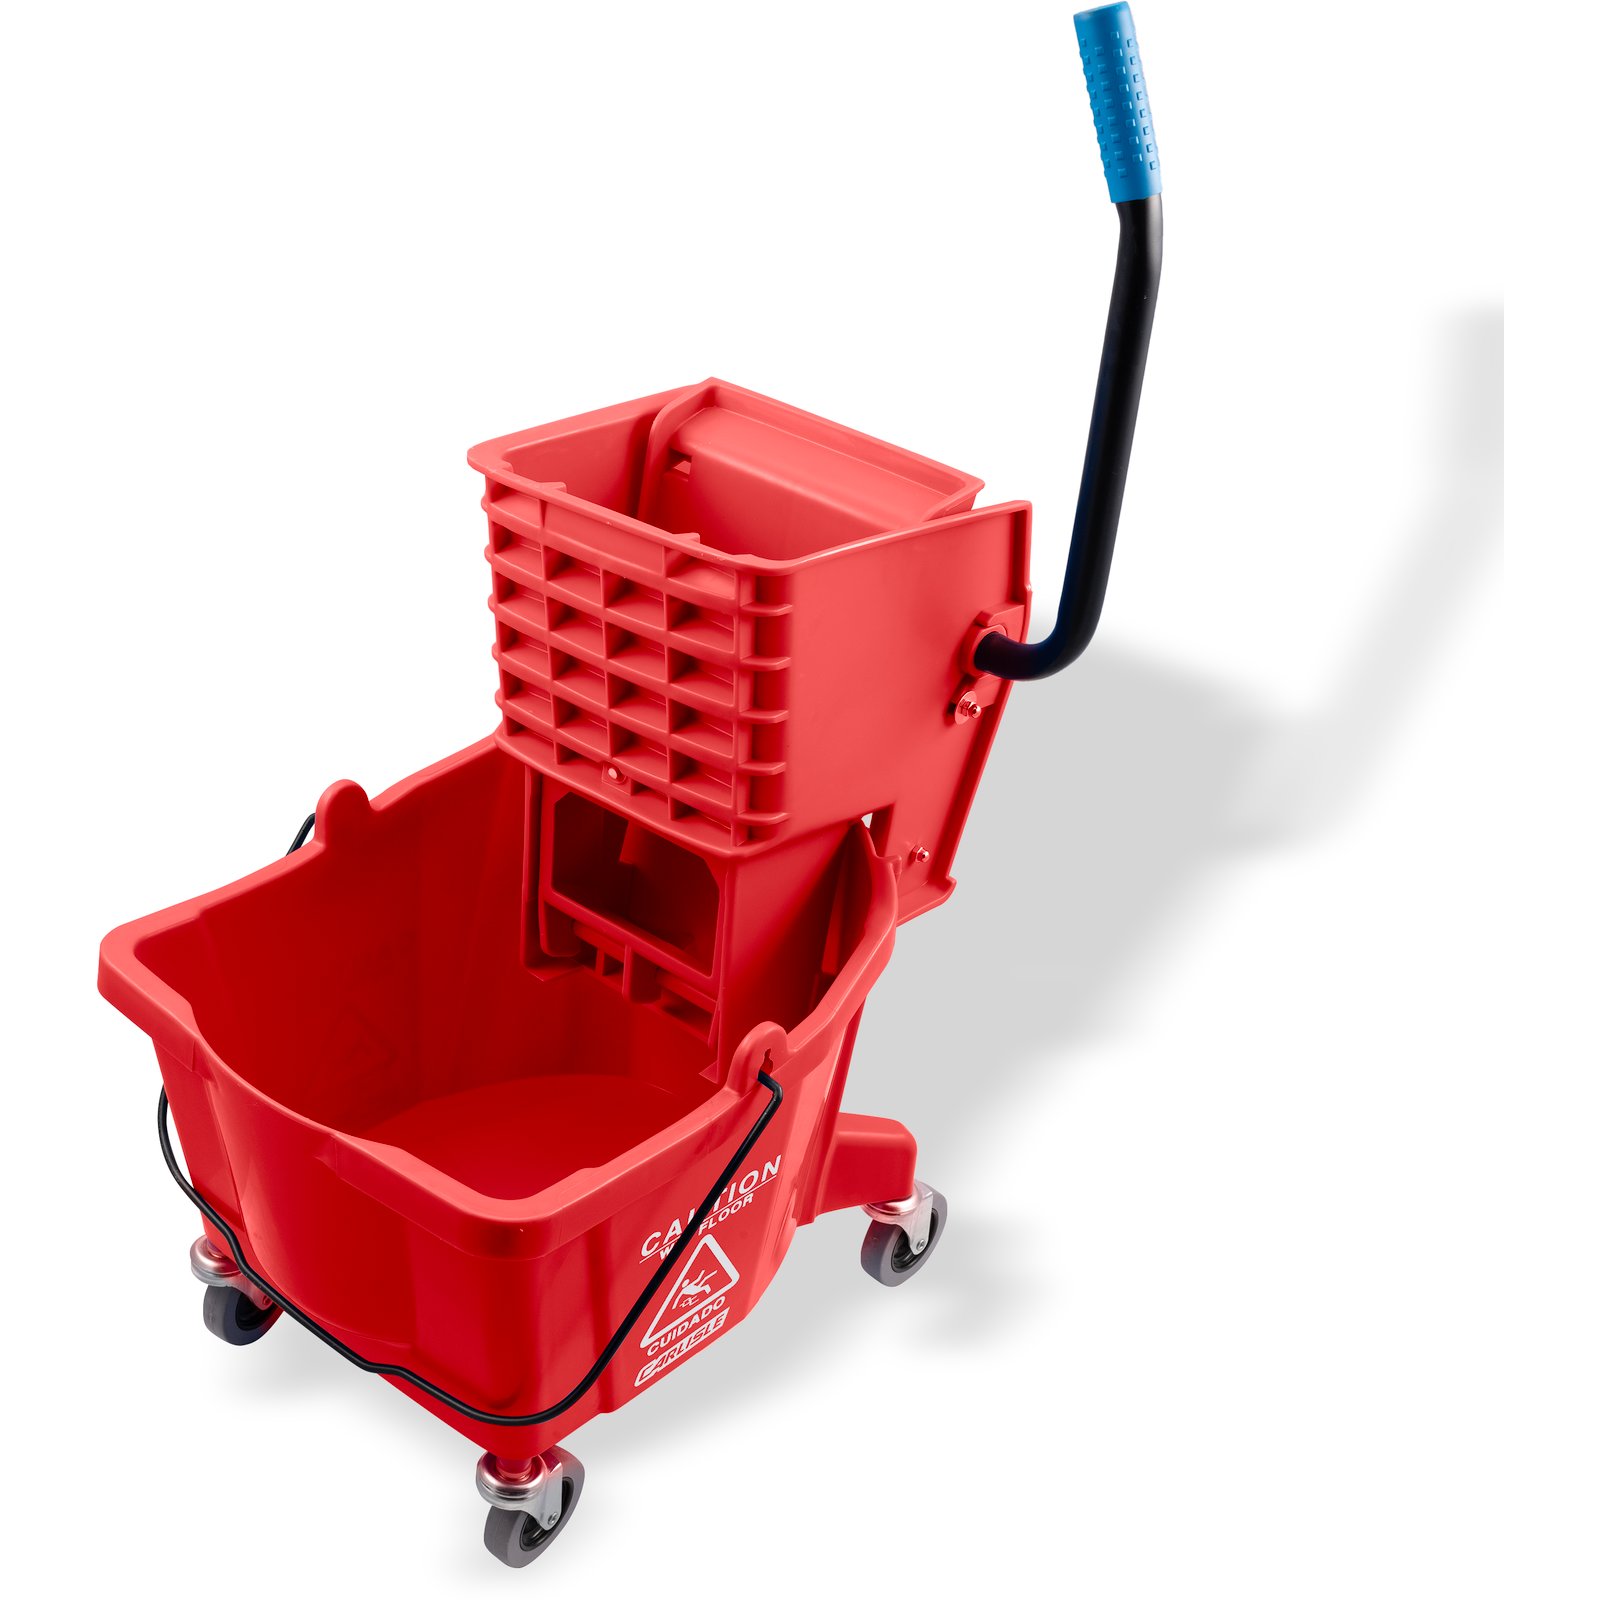 26 Quart Side Press Wringer Commercial Mop Bucket